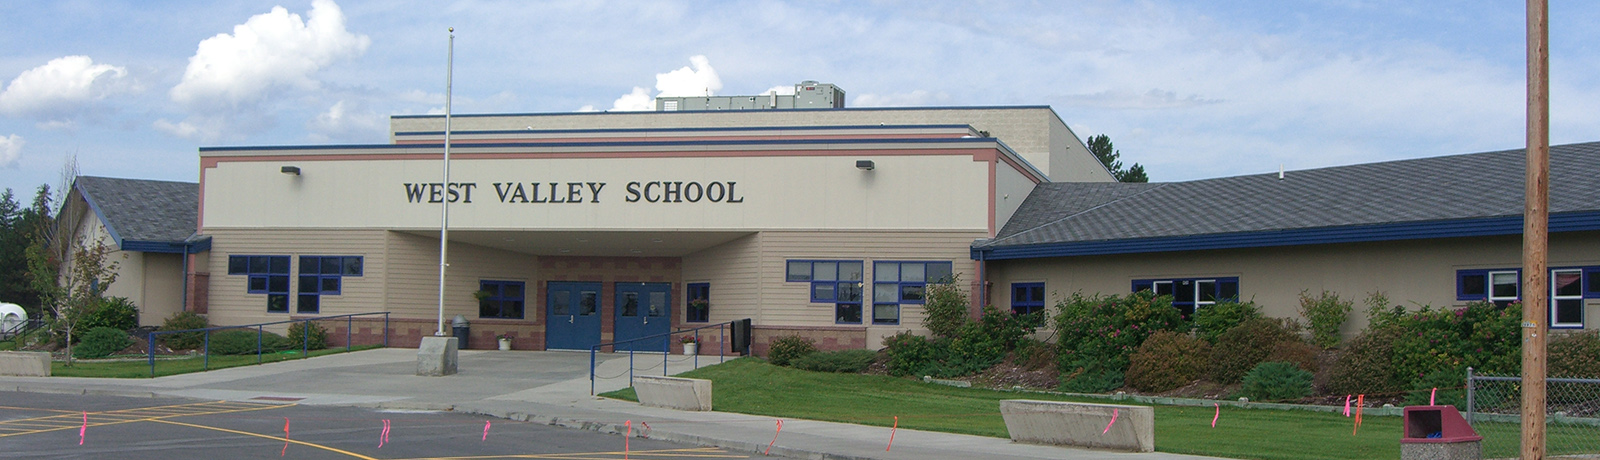 West Valley School Addition